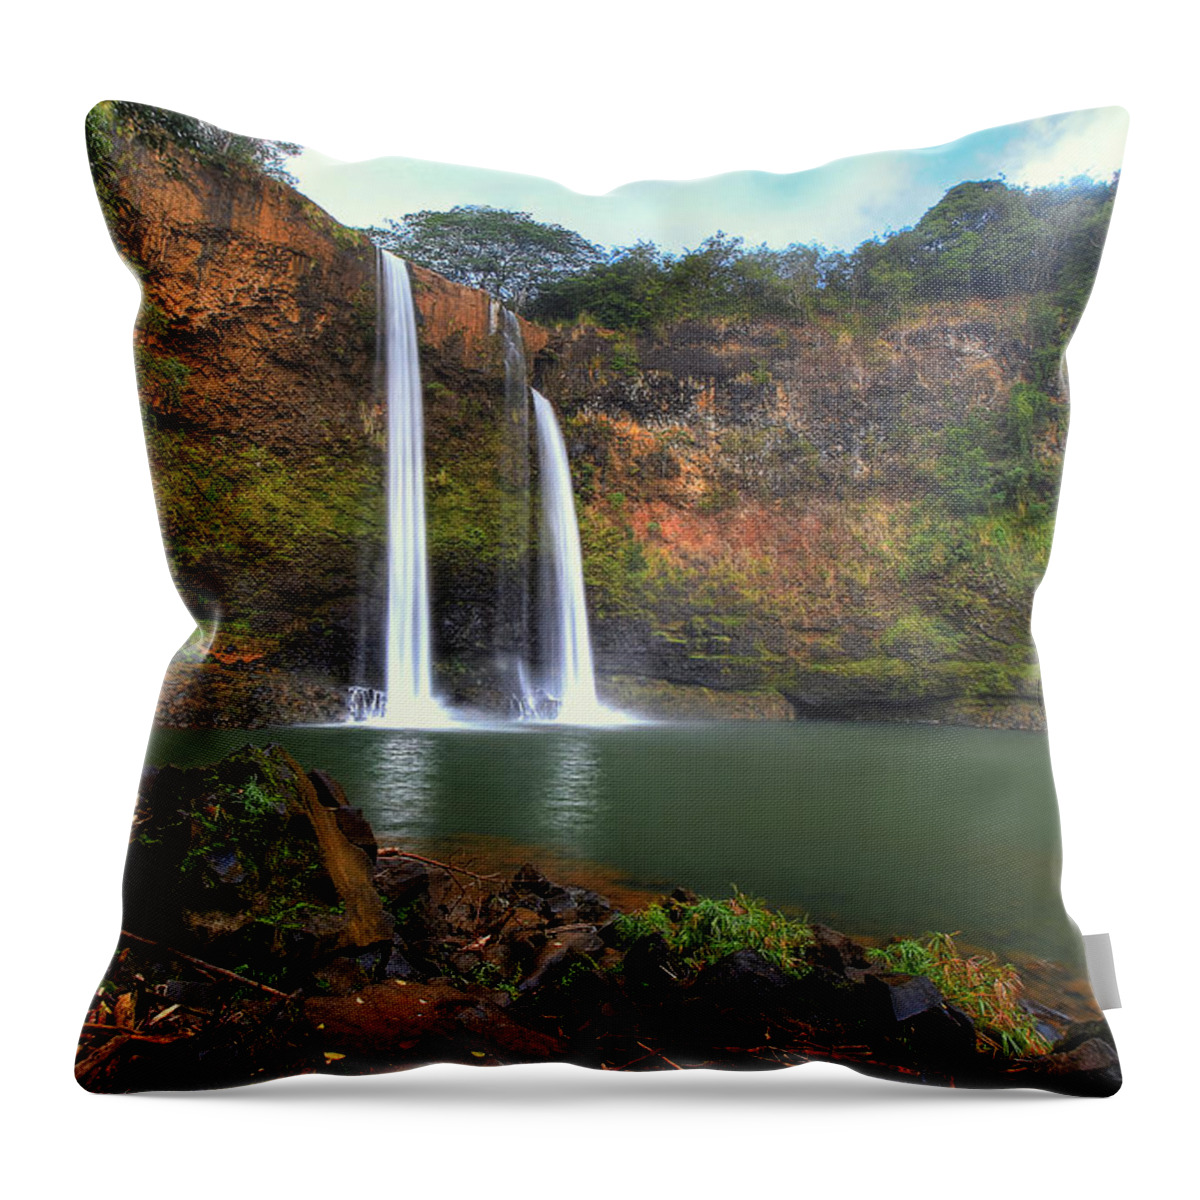 Wailua Falls Throw Pillow featuring the photograph Wailua Falls by Ryan Smith